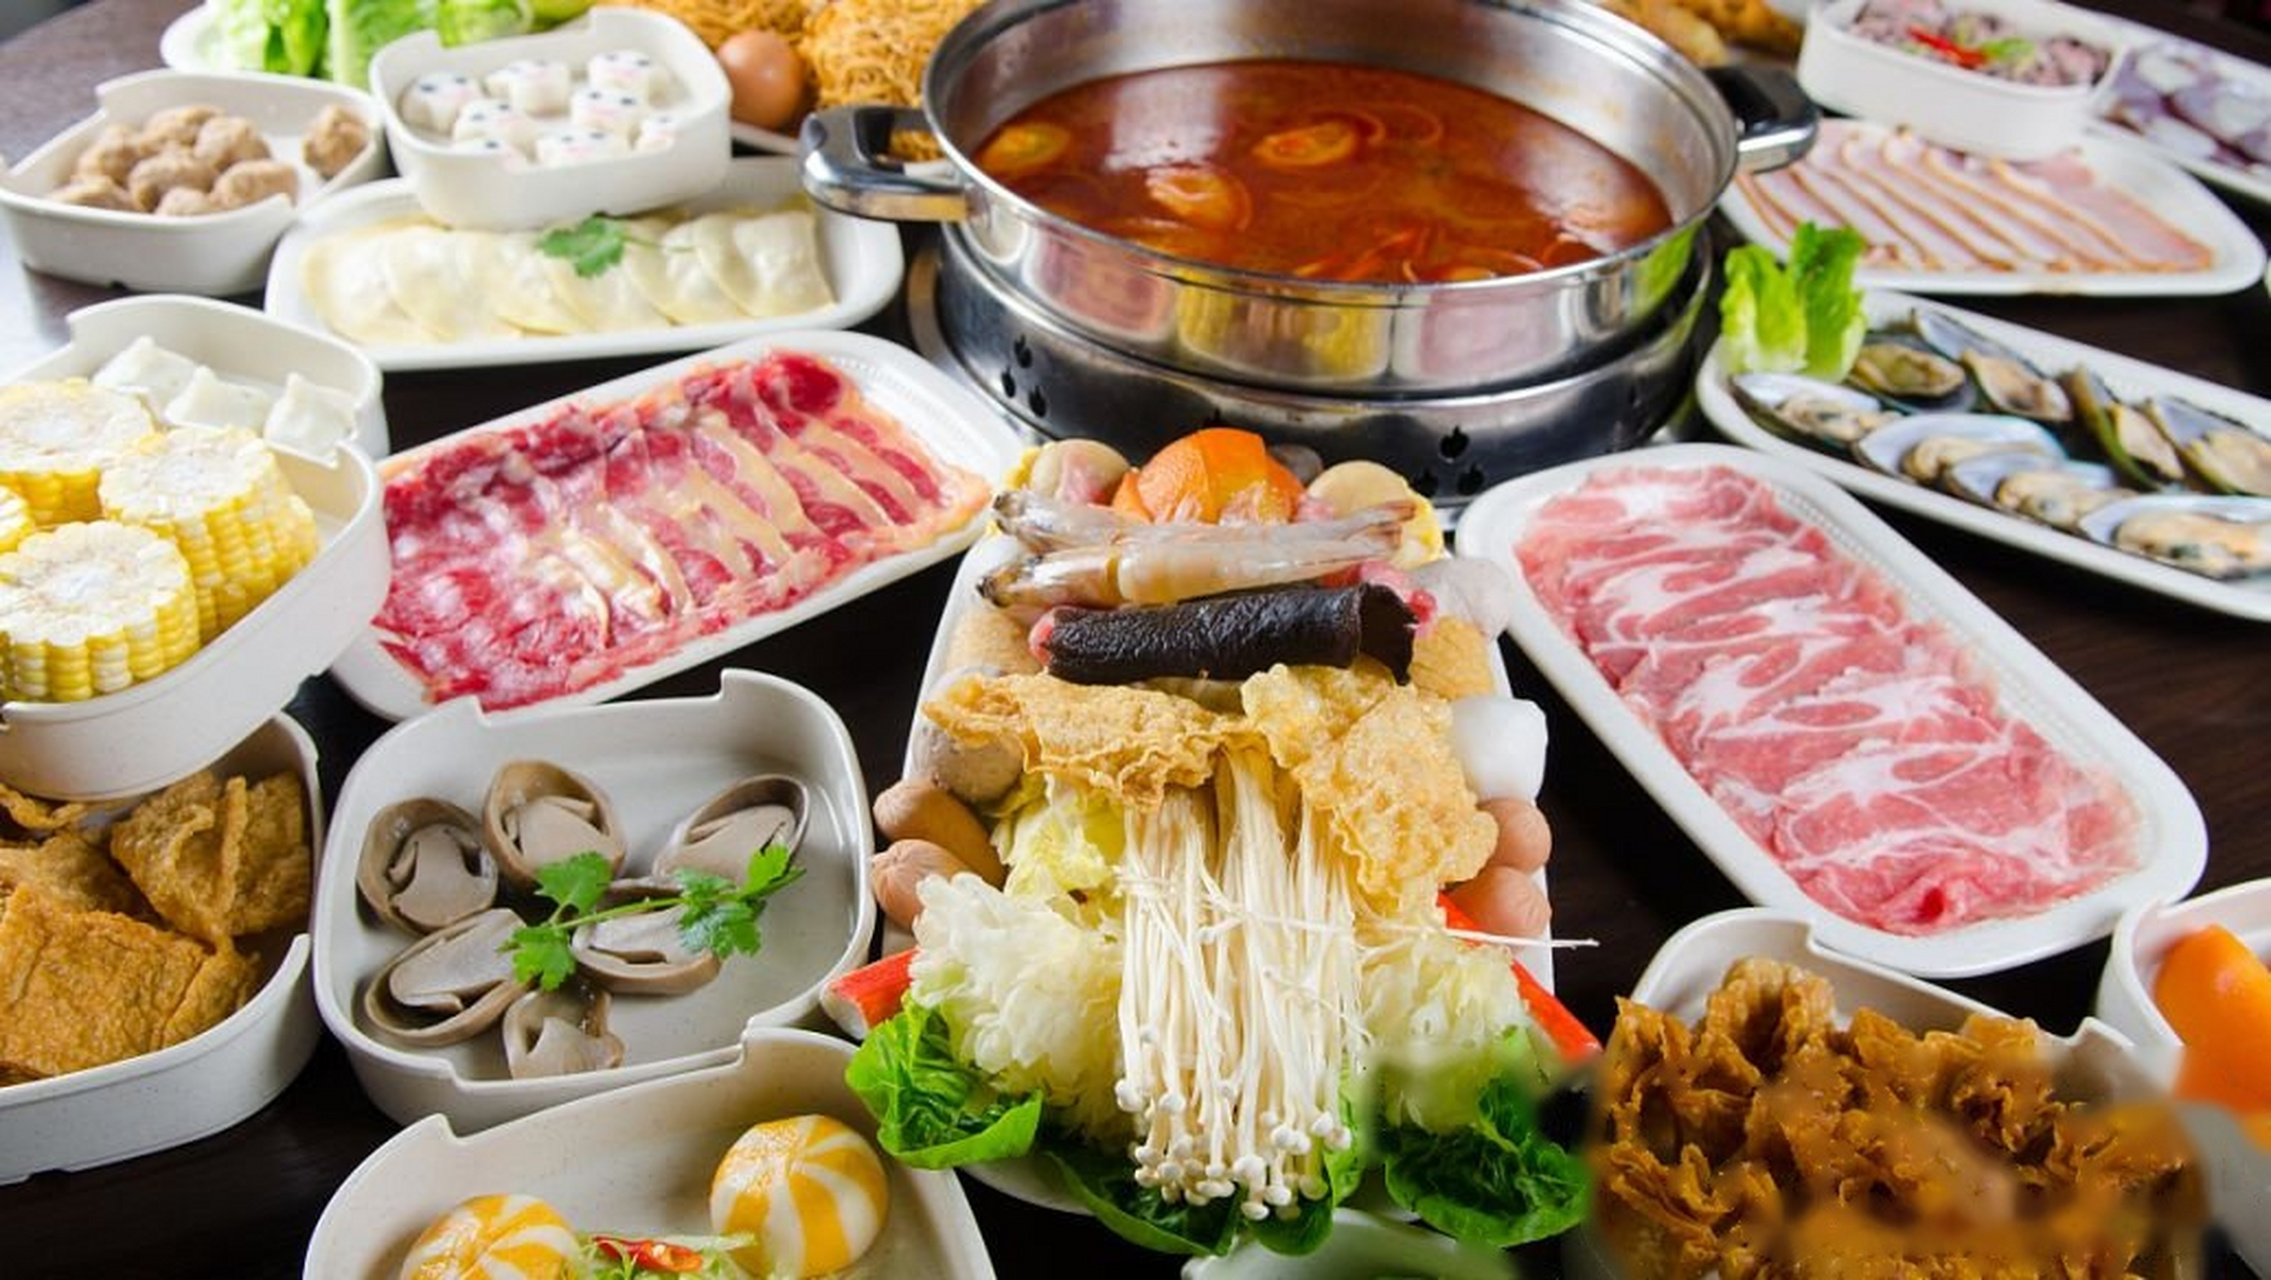 因为吃火锅不仅要吃各种肉类,还要吃各种蔬菜,豆制品,薯类等等